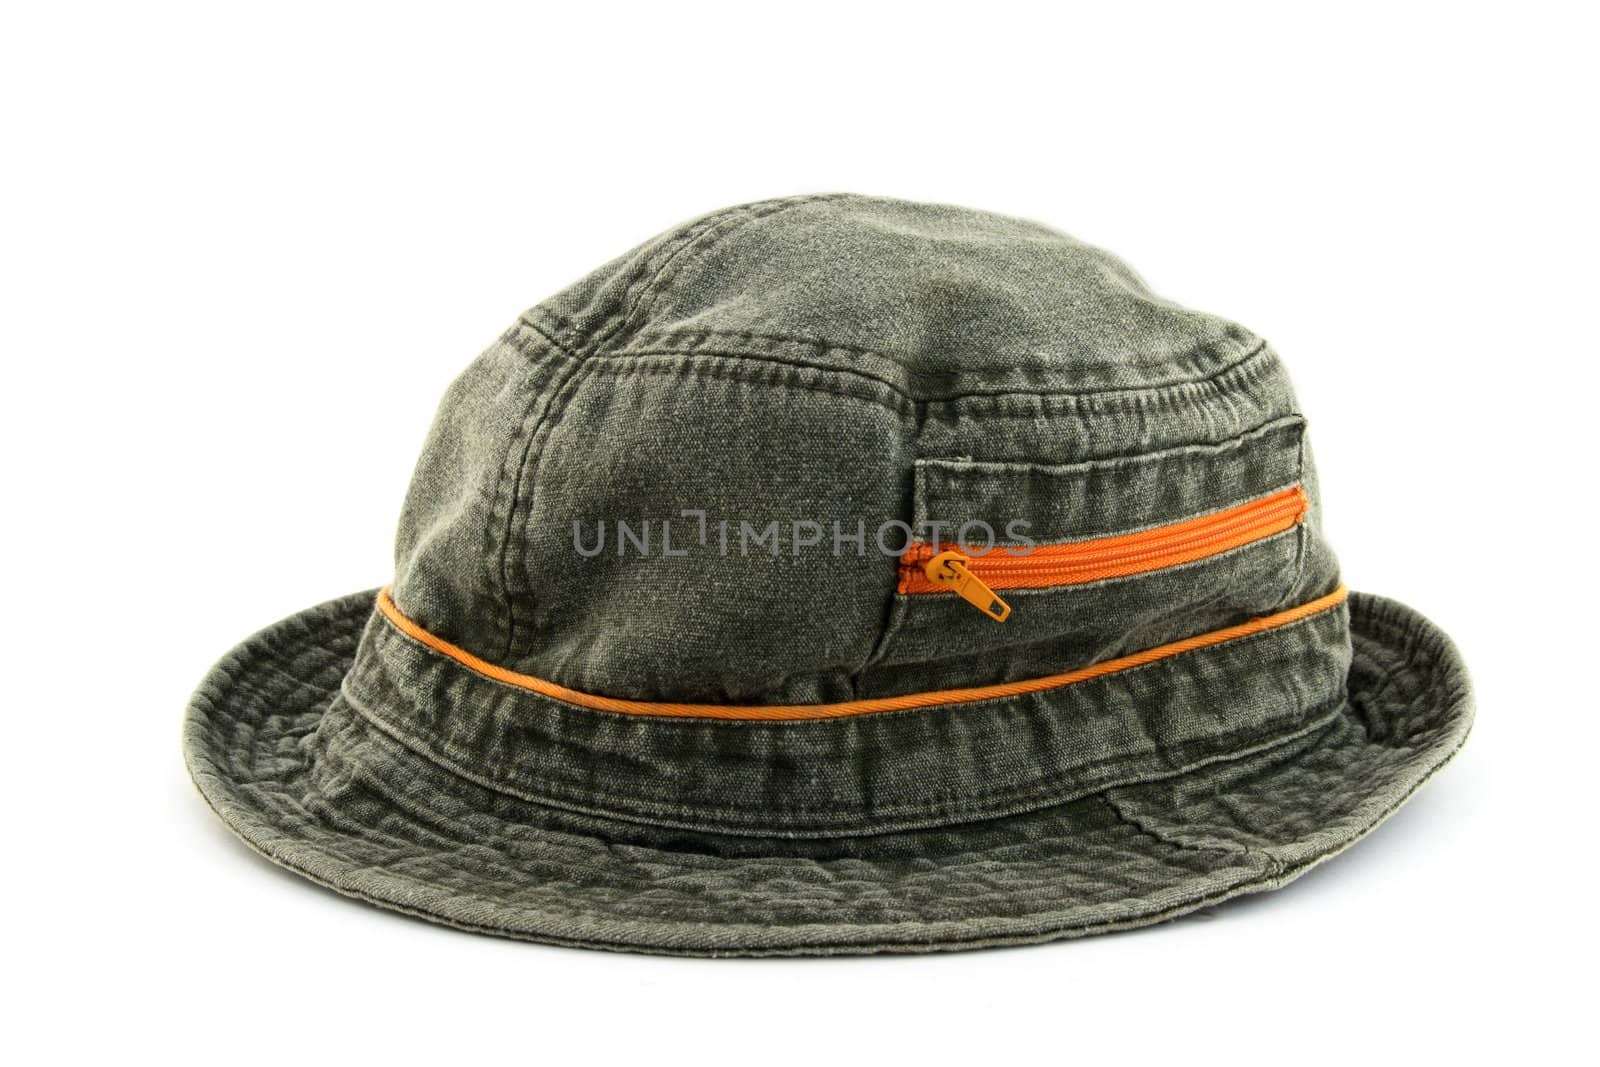 Denim hat with orange zipper by anikasalsera